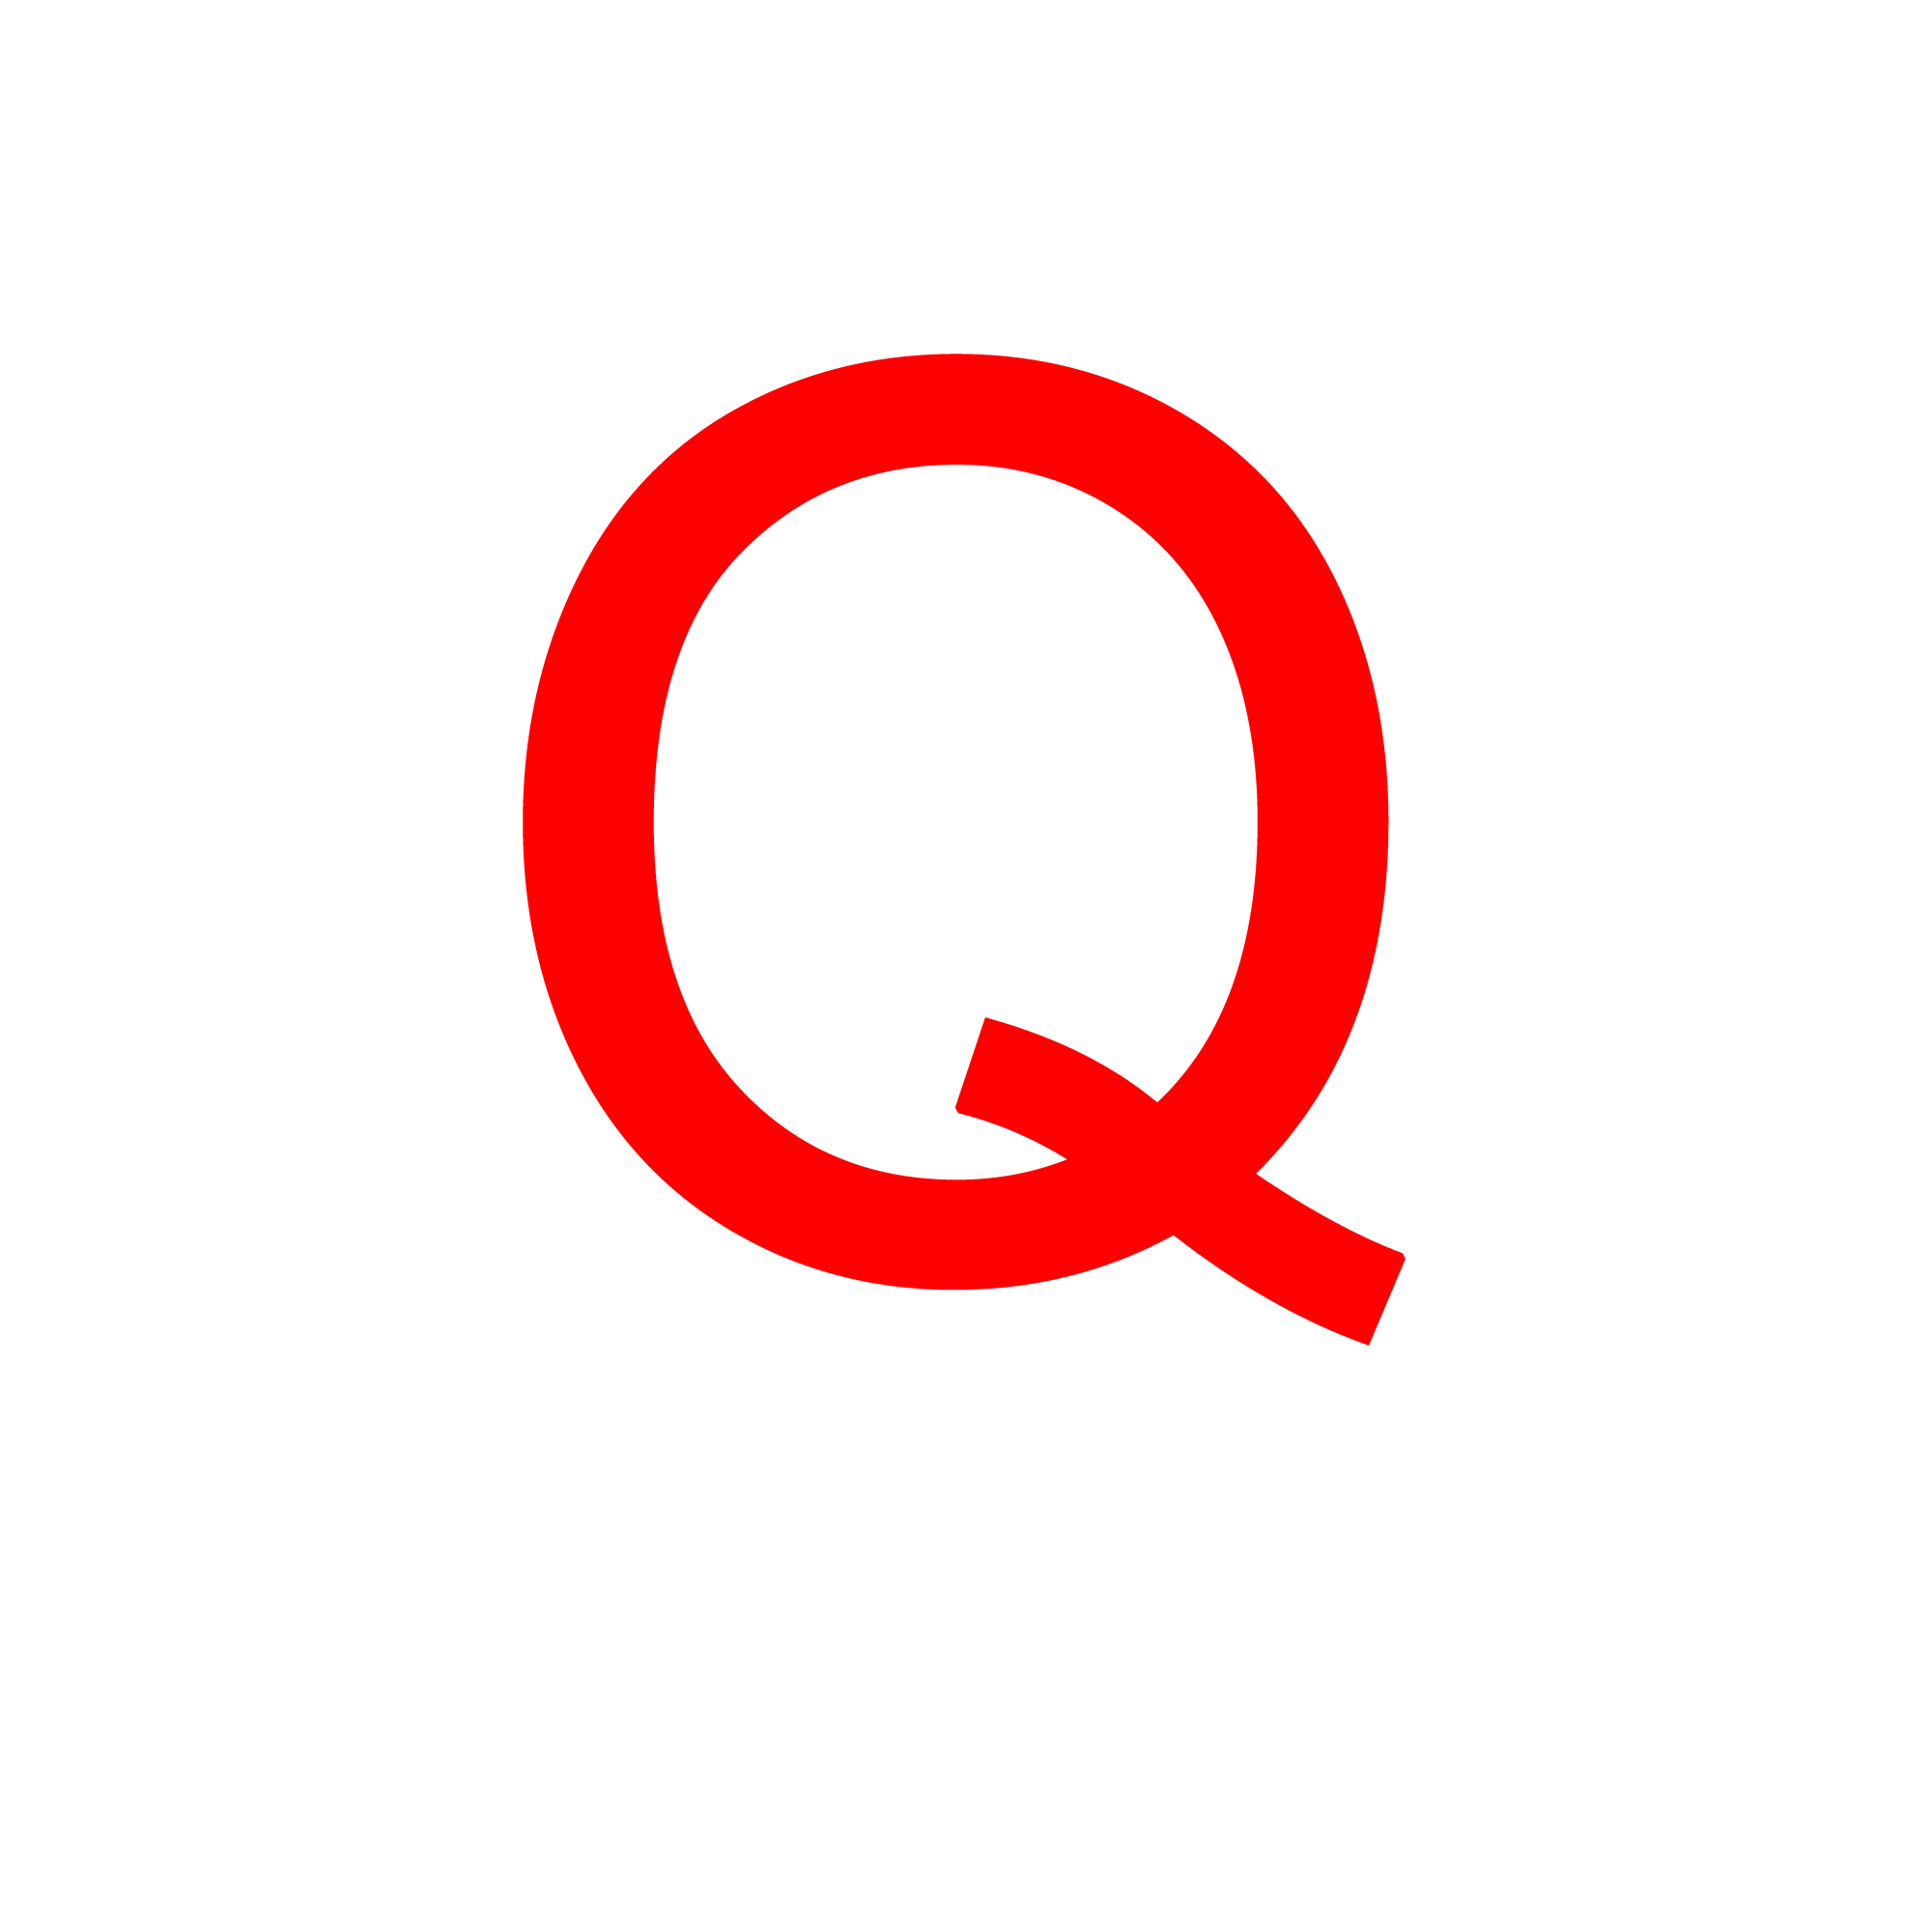 字母 Q